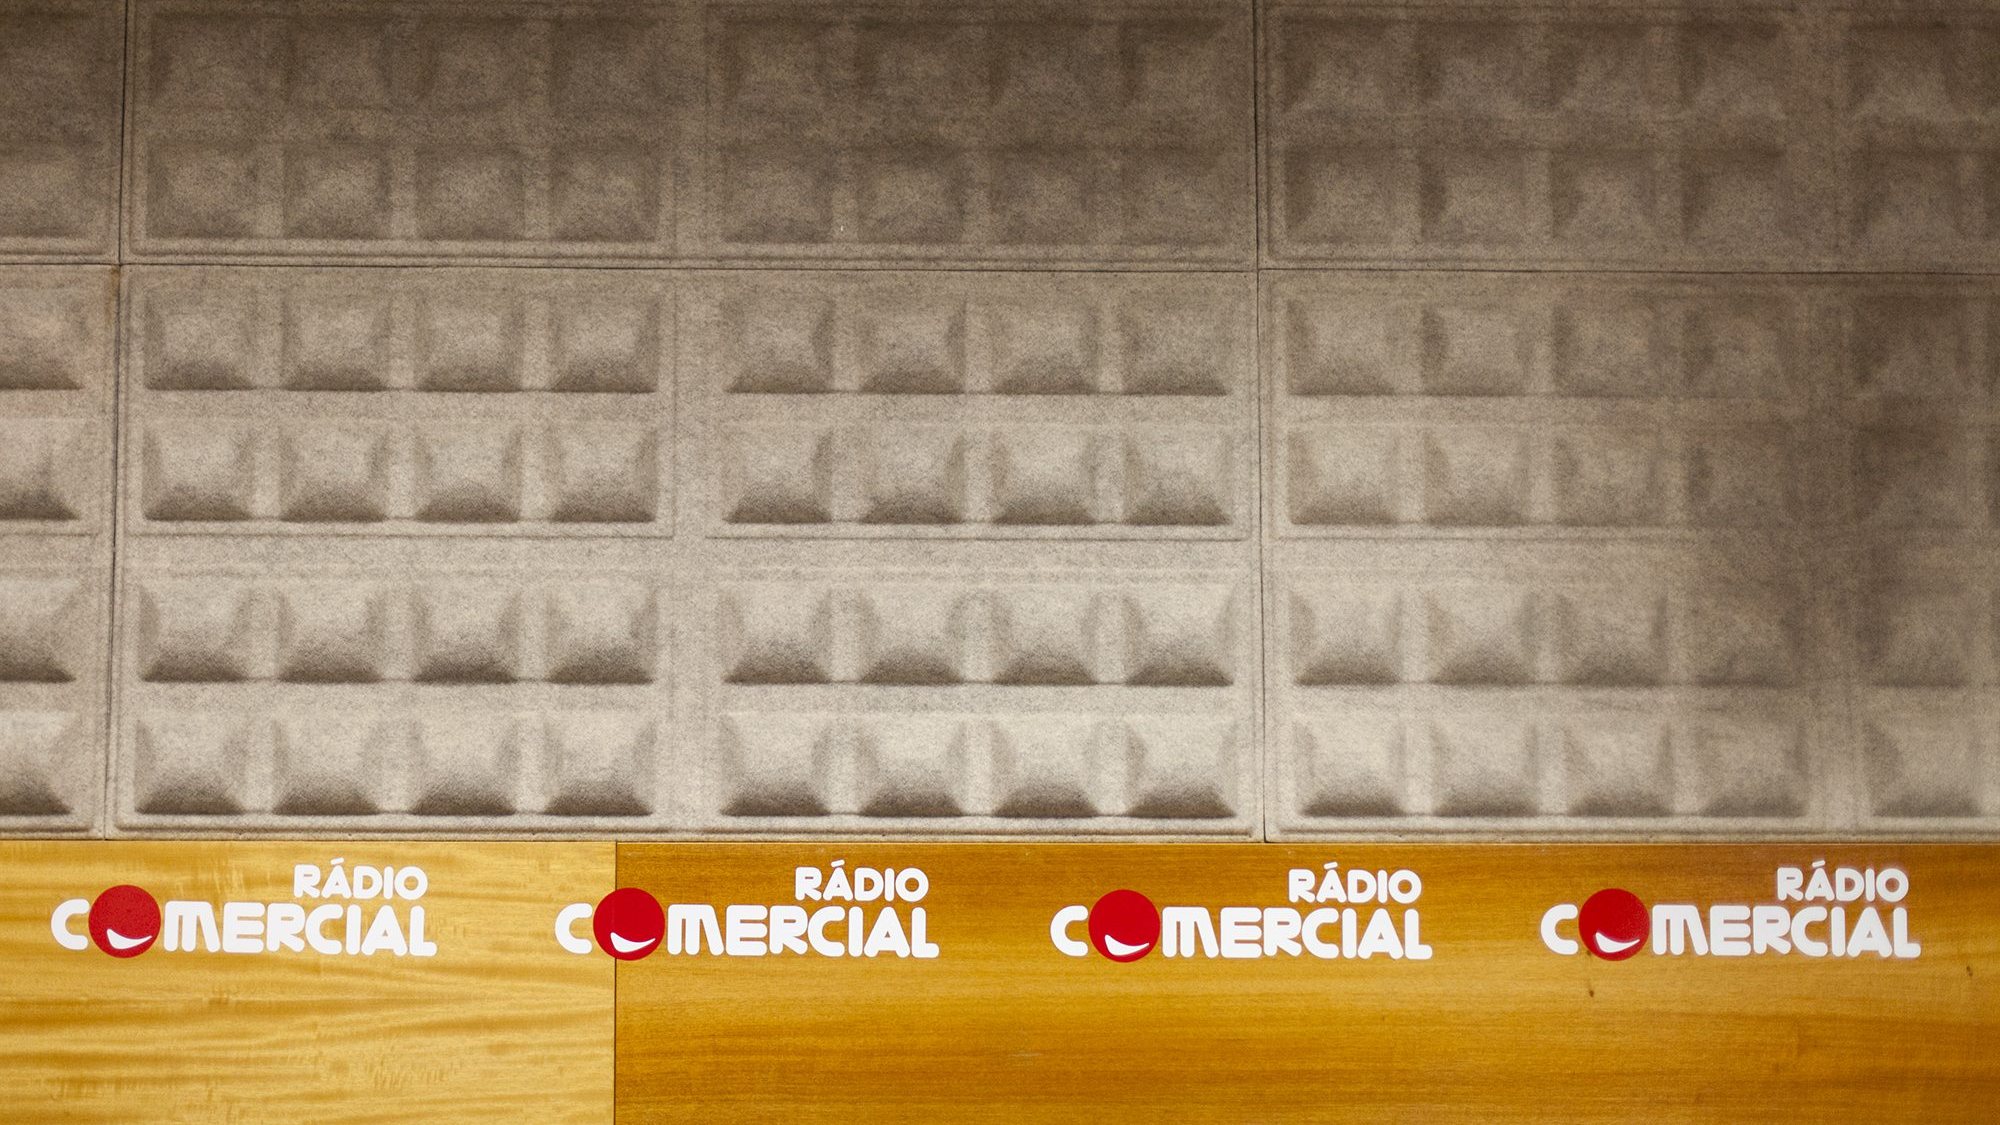 A Rádio Comercial, no portfólio da Media Capital desde 1997, é a estação com mais audiência em Portugal